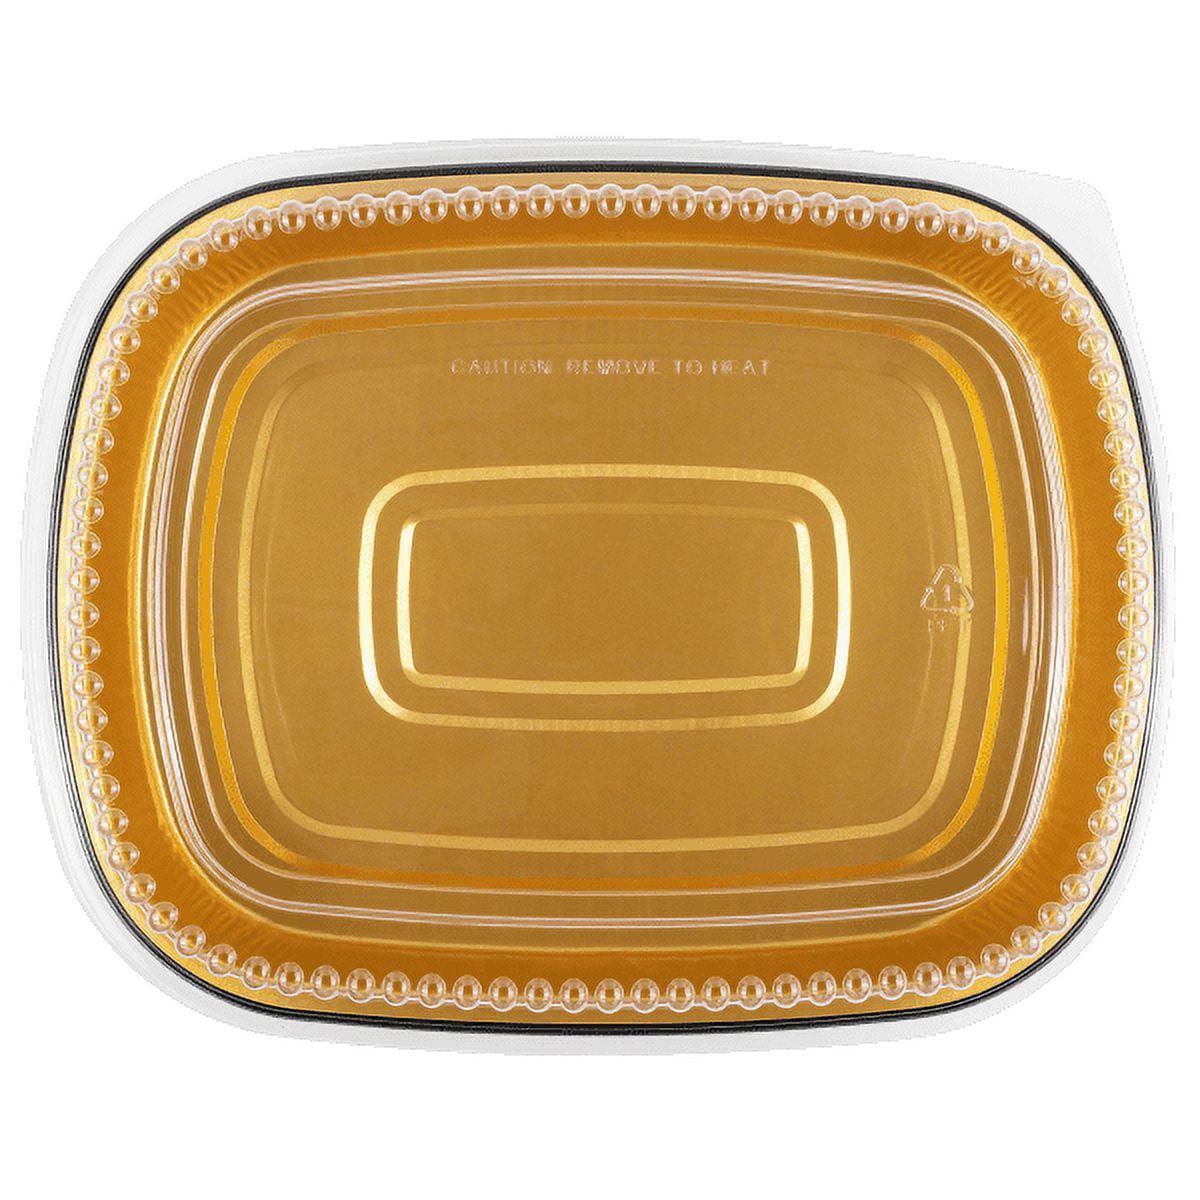 3 lb. Medium Black and Gold Entrée Foil Pan w/Clear Dome Lid 10/PK